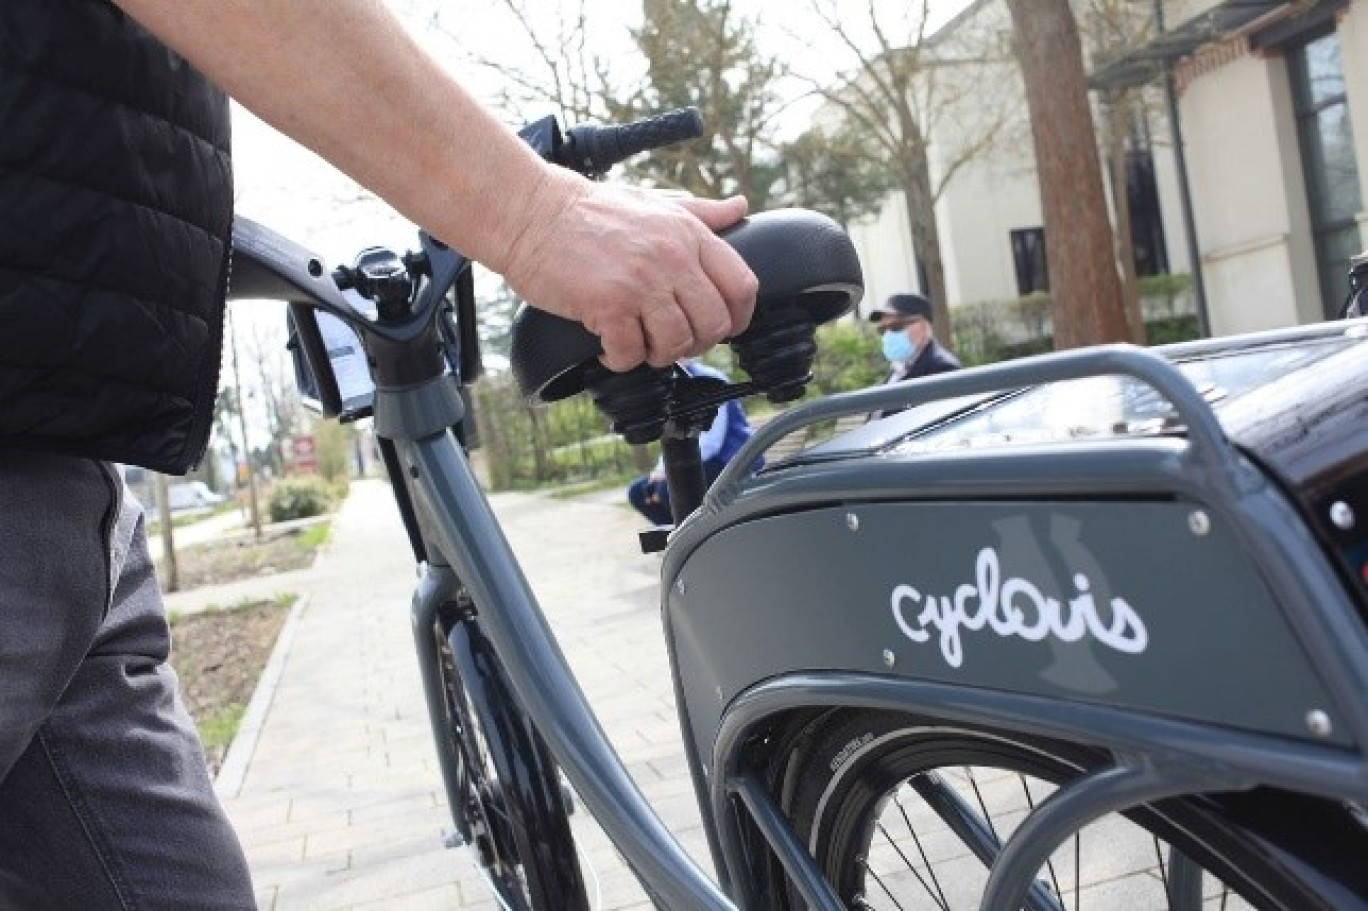 Cyclovis, service de bike sharing, compte aujourd'hui 15 stations, dotées au total de 75 vélos.